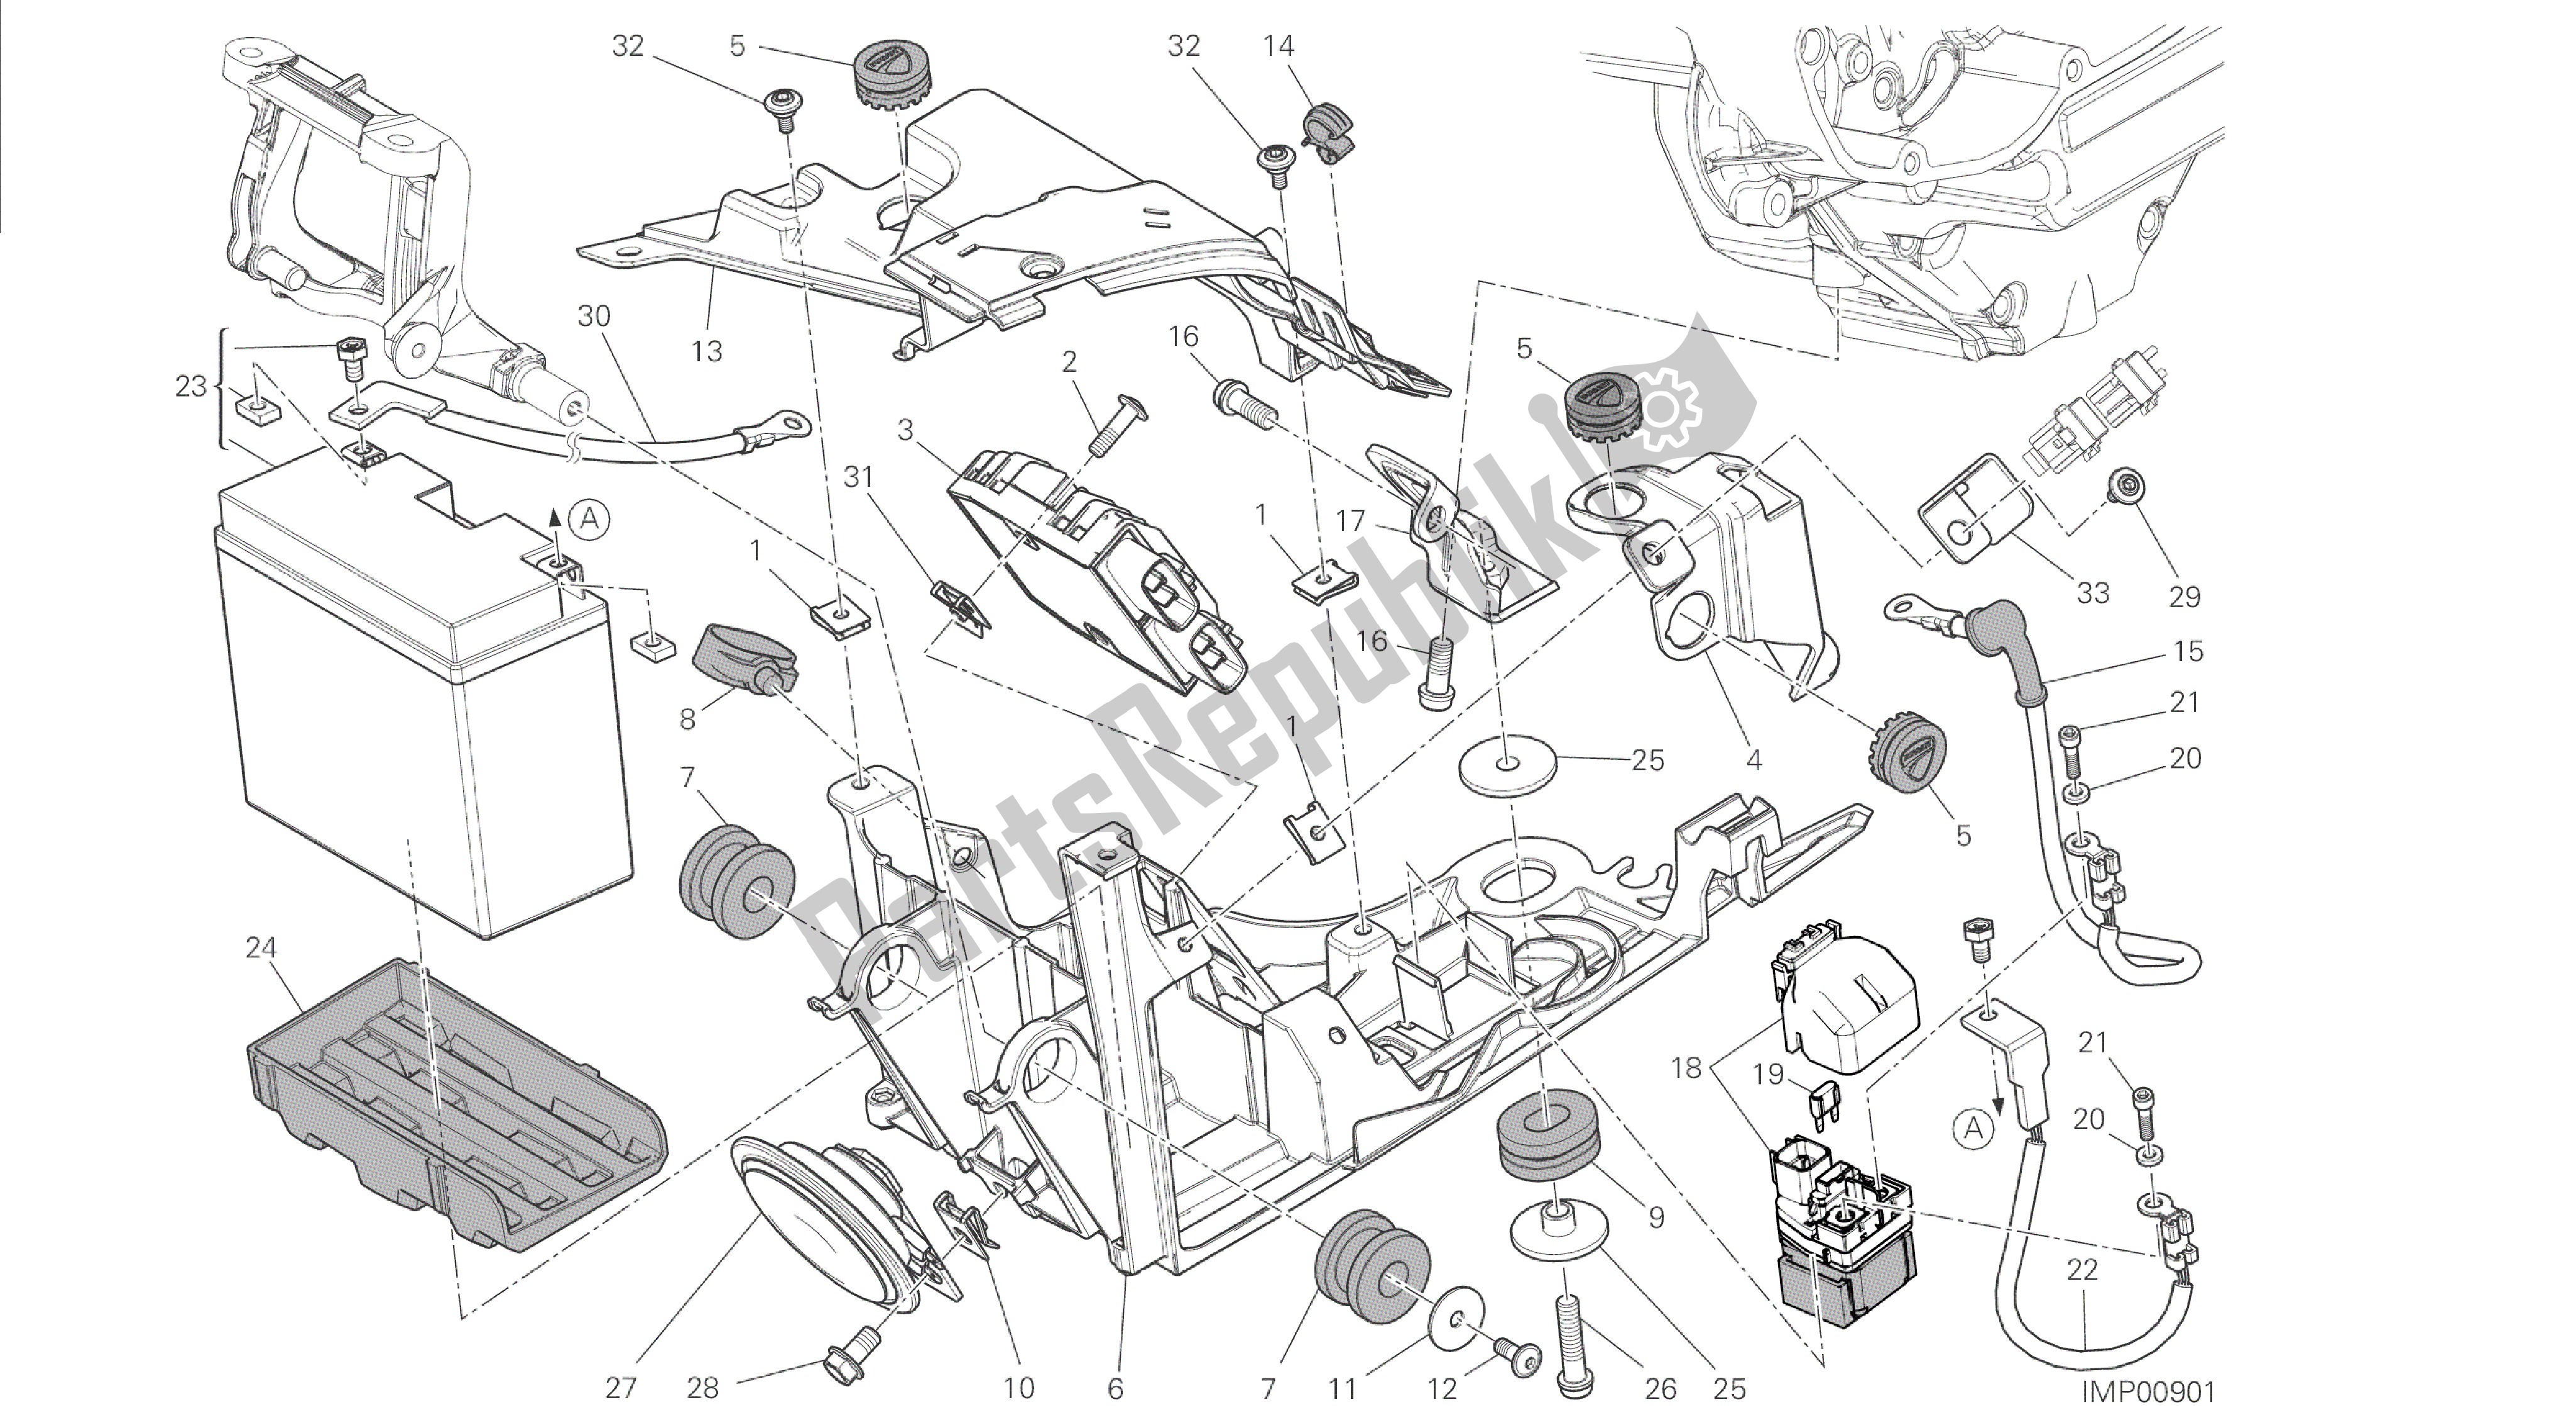 Todas las partes para Dibujo 018 - Soporte De Batería [mod: Dvl] Grupo Eléctrico de Ducati Diavel 1200 2014